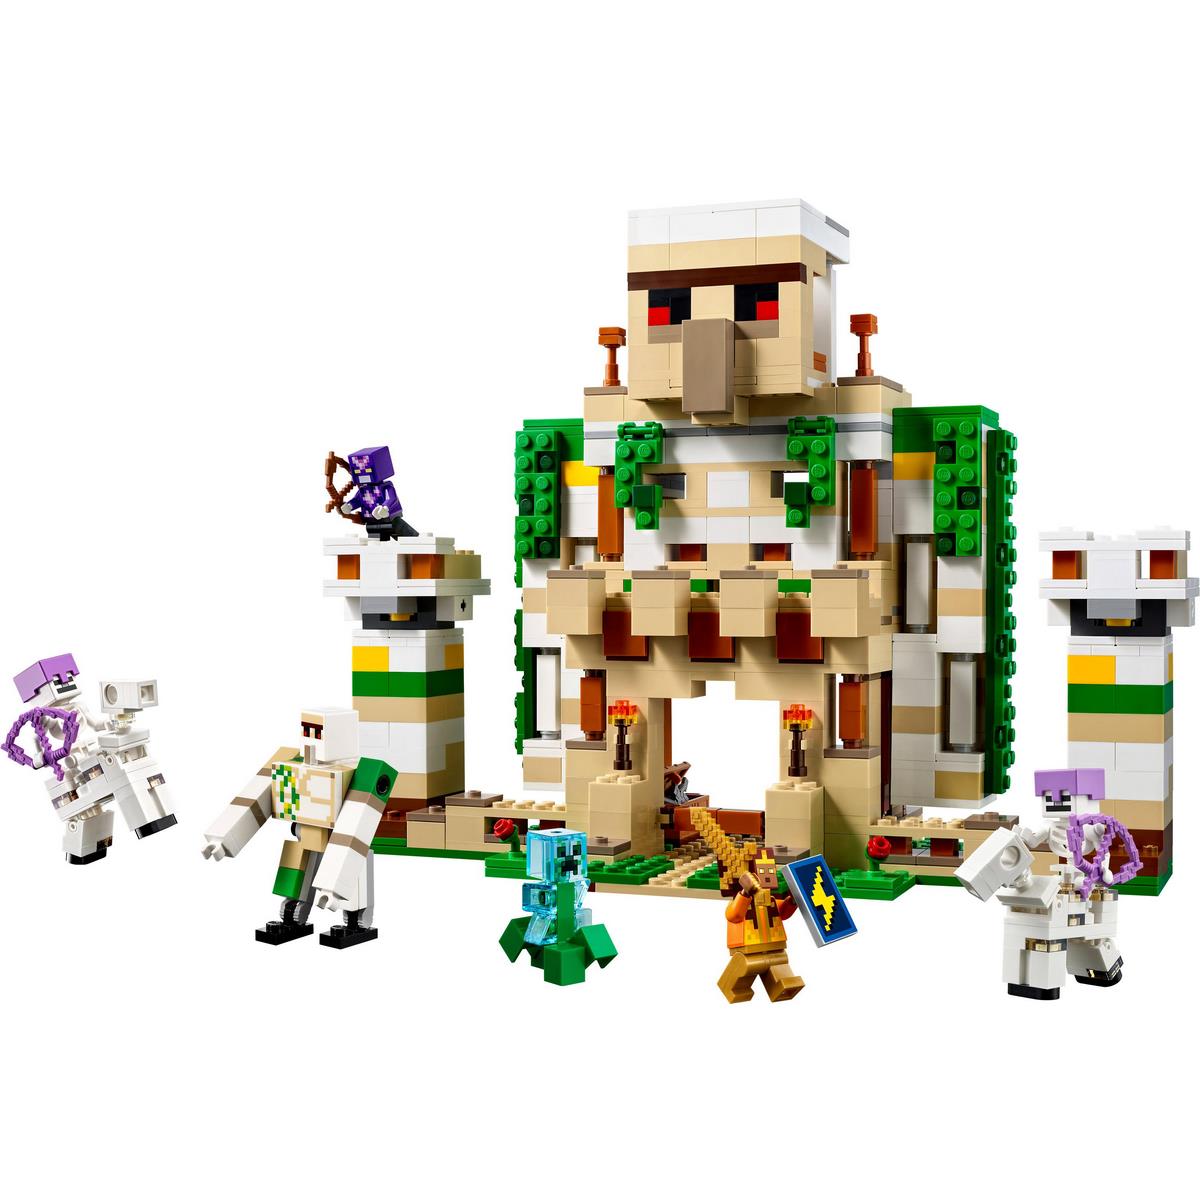 Le Village Abandonné LEGO Minecraft 21070 - La Grande Récré